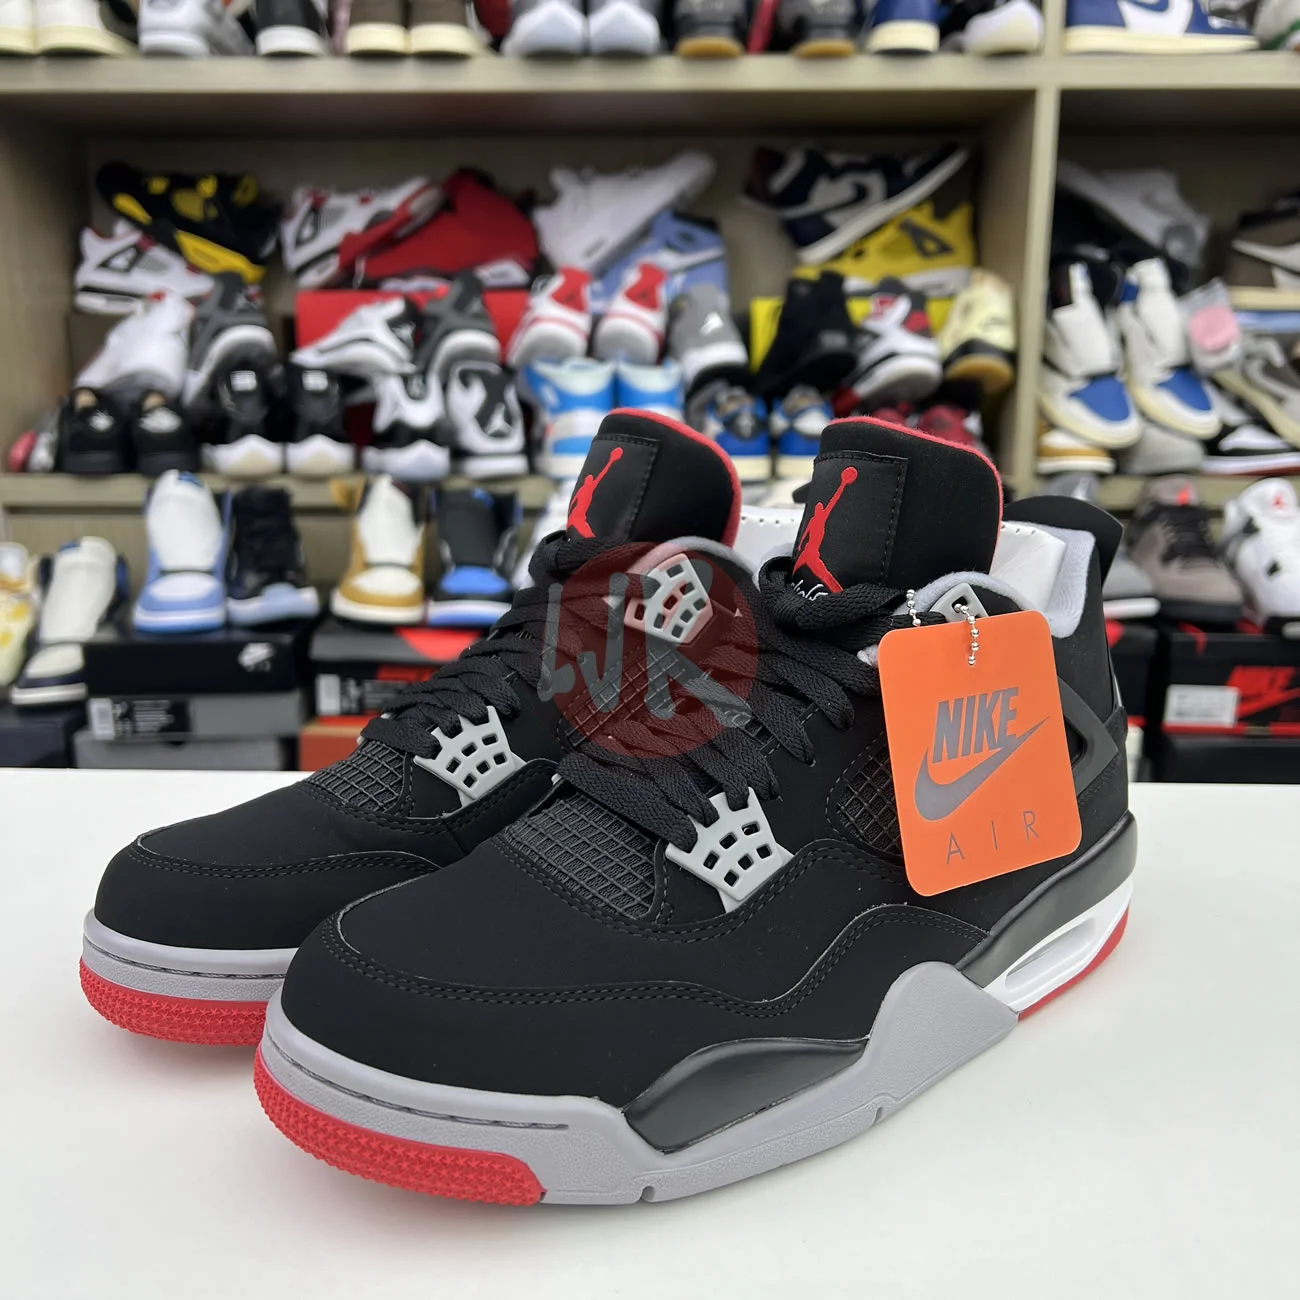 Air Jordan 4 Retro Bred 2019 308497 060 Ljr Sneakers (10) - bc-ljr.com